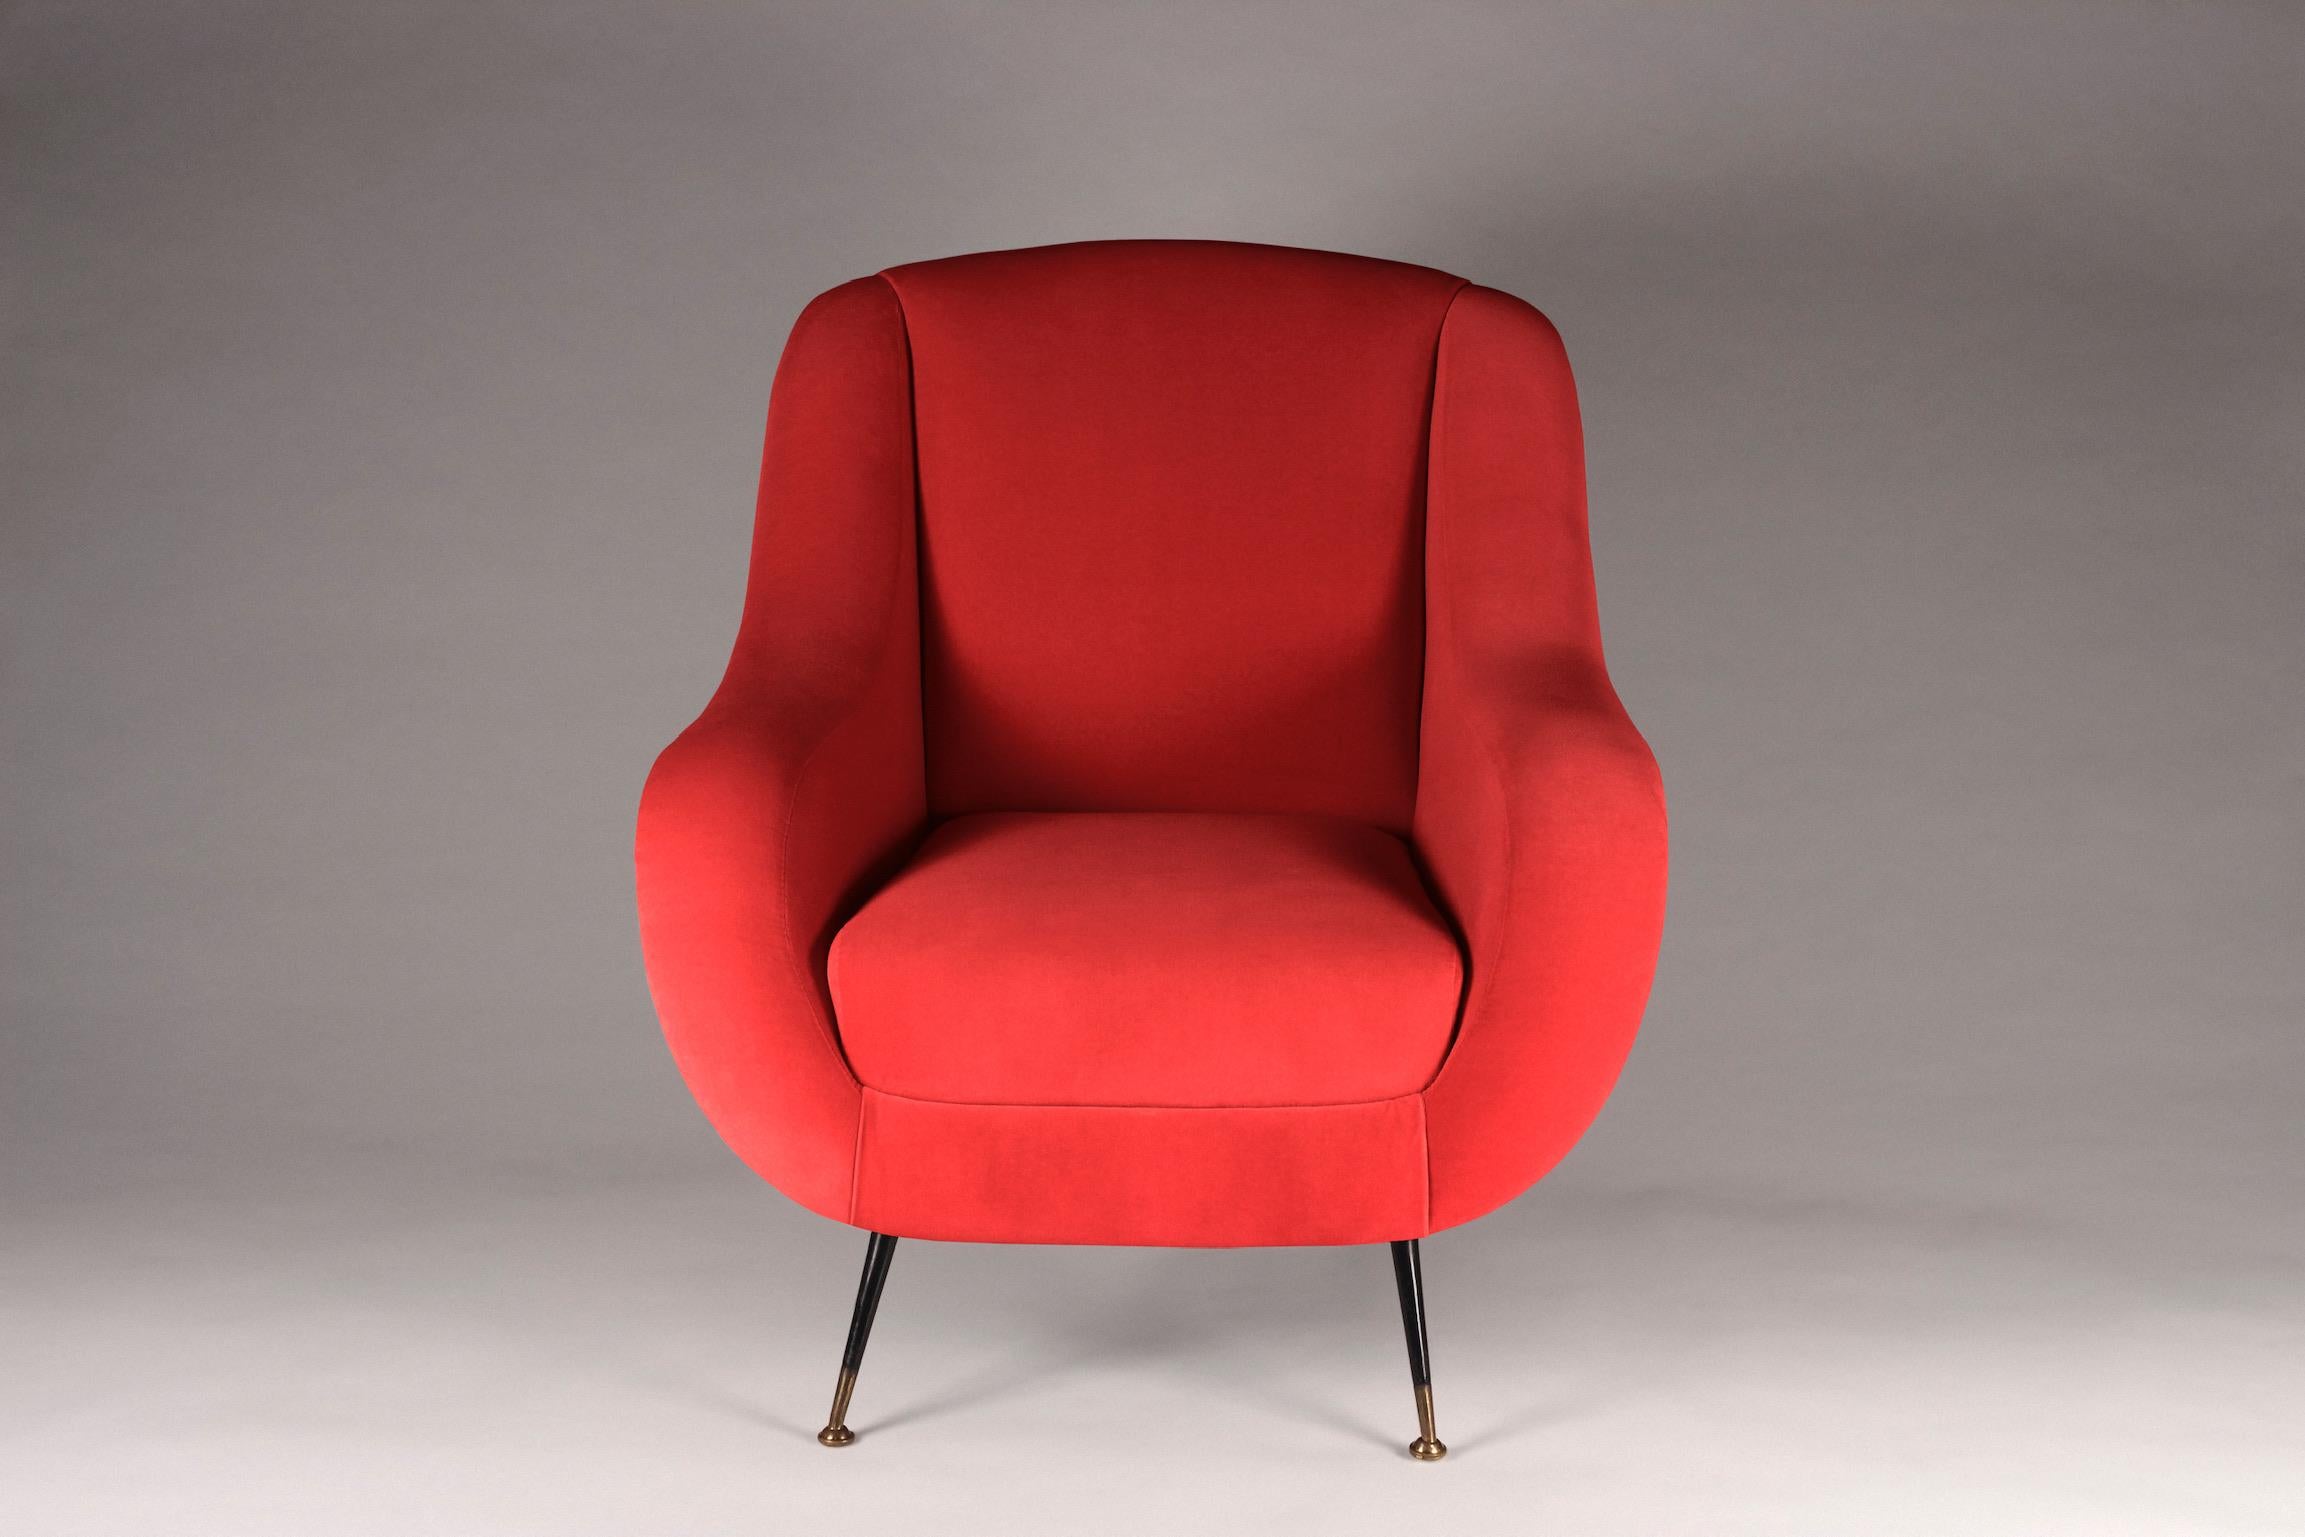 La chaise Sophia s'inspire du design italien des années 50 et est maintenant créée par des artisans anglais pour le 21ème siècle. Nous avons mis au point un fauteuil de salon avec la possibilité d'en produire n'importe quel nombre selon vos